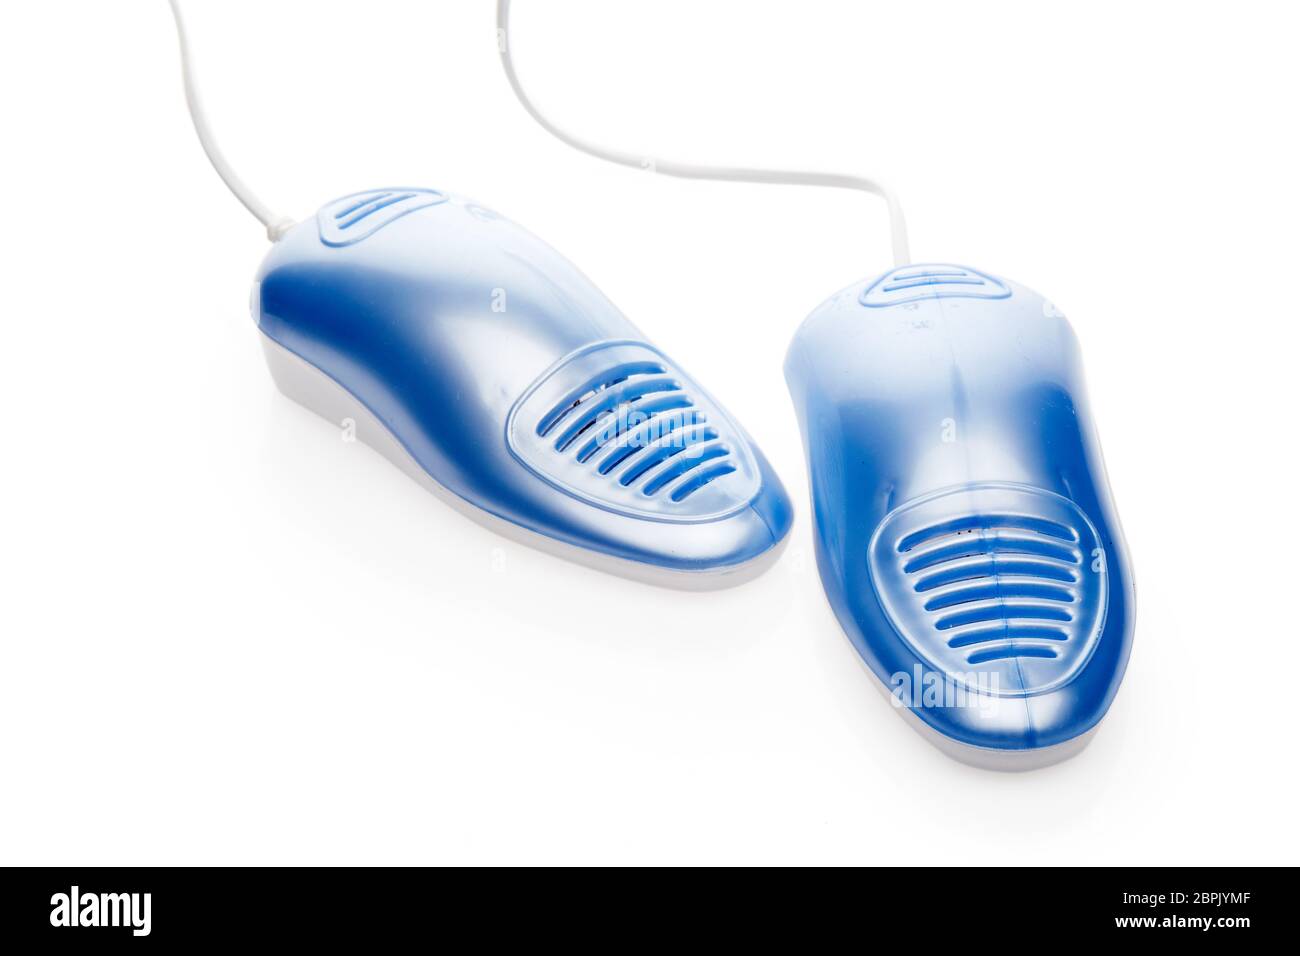 Elektroschuhe Trockner mit UV-Sterilisation auf weißem Hintergrund, Deodorant und antimykotische Wirkung. Konzept der gesunden Füße Stockfoto